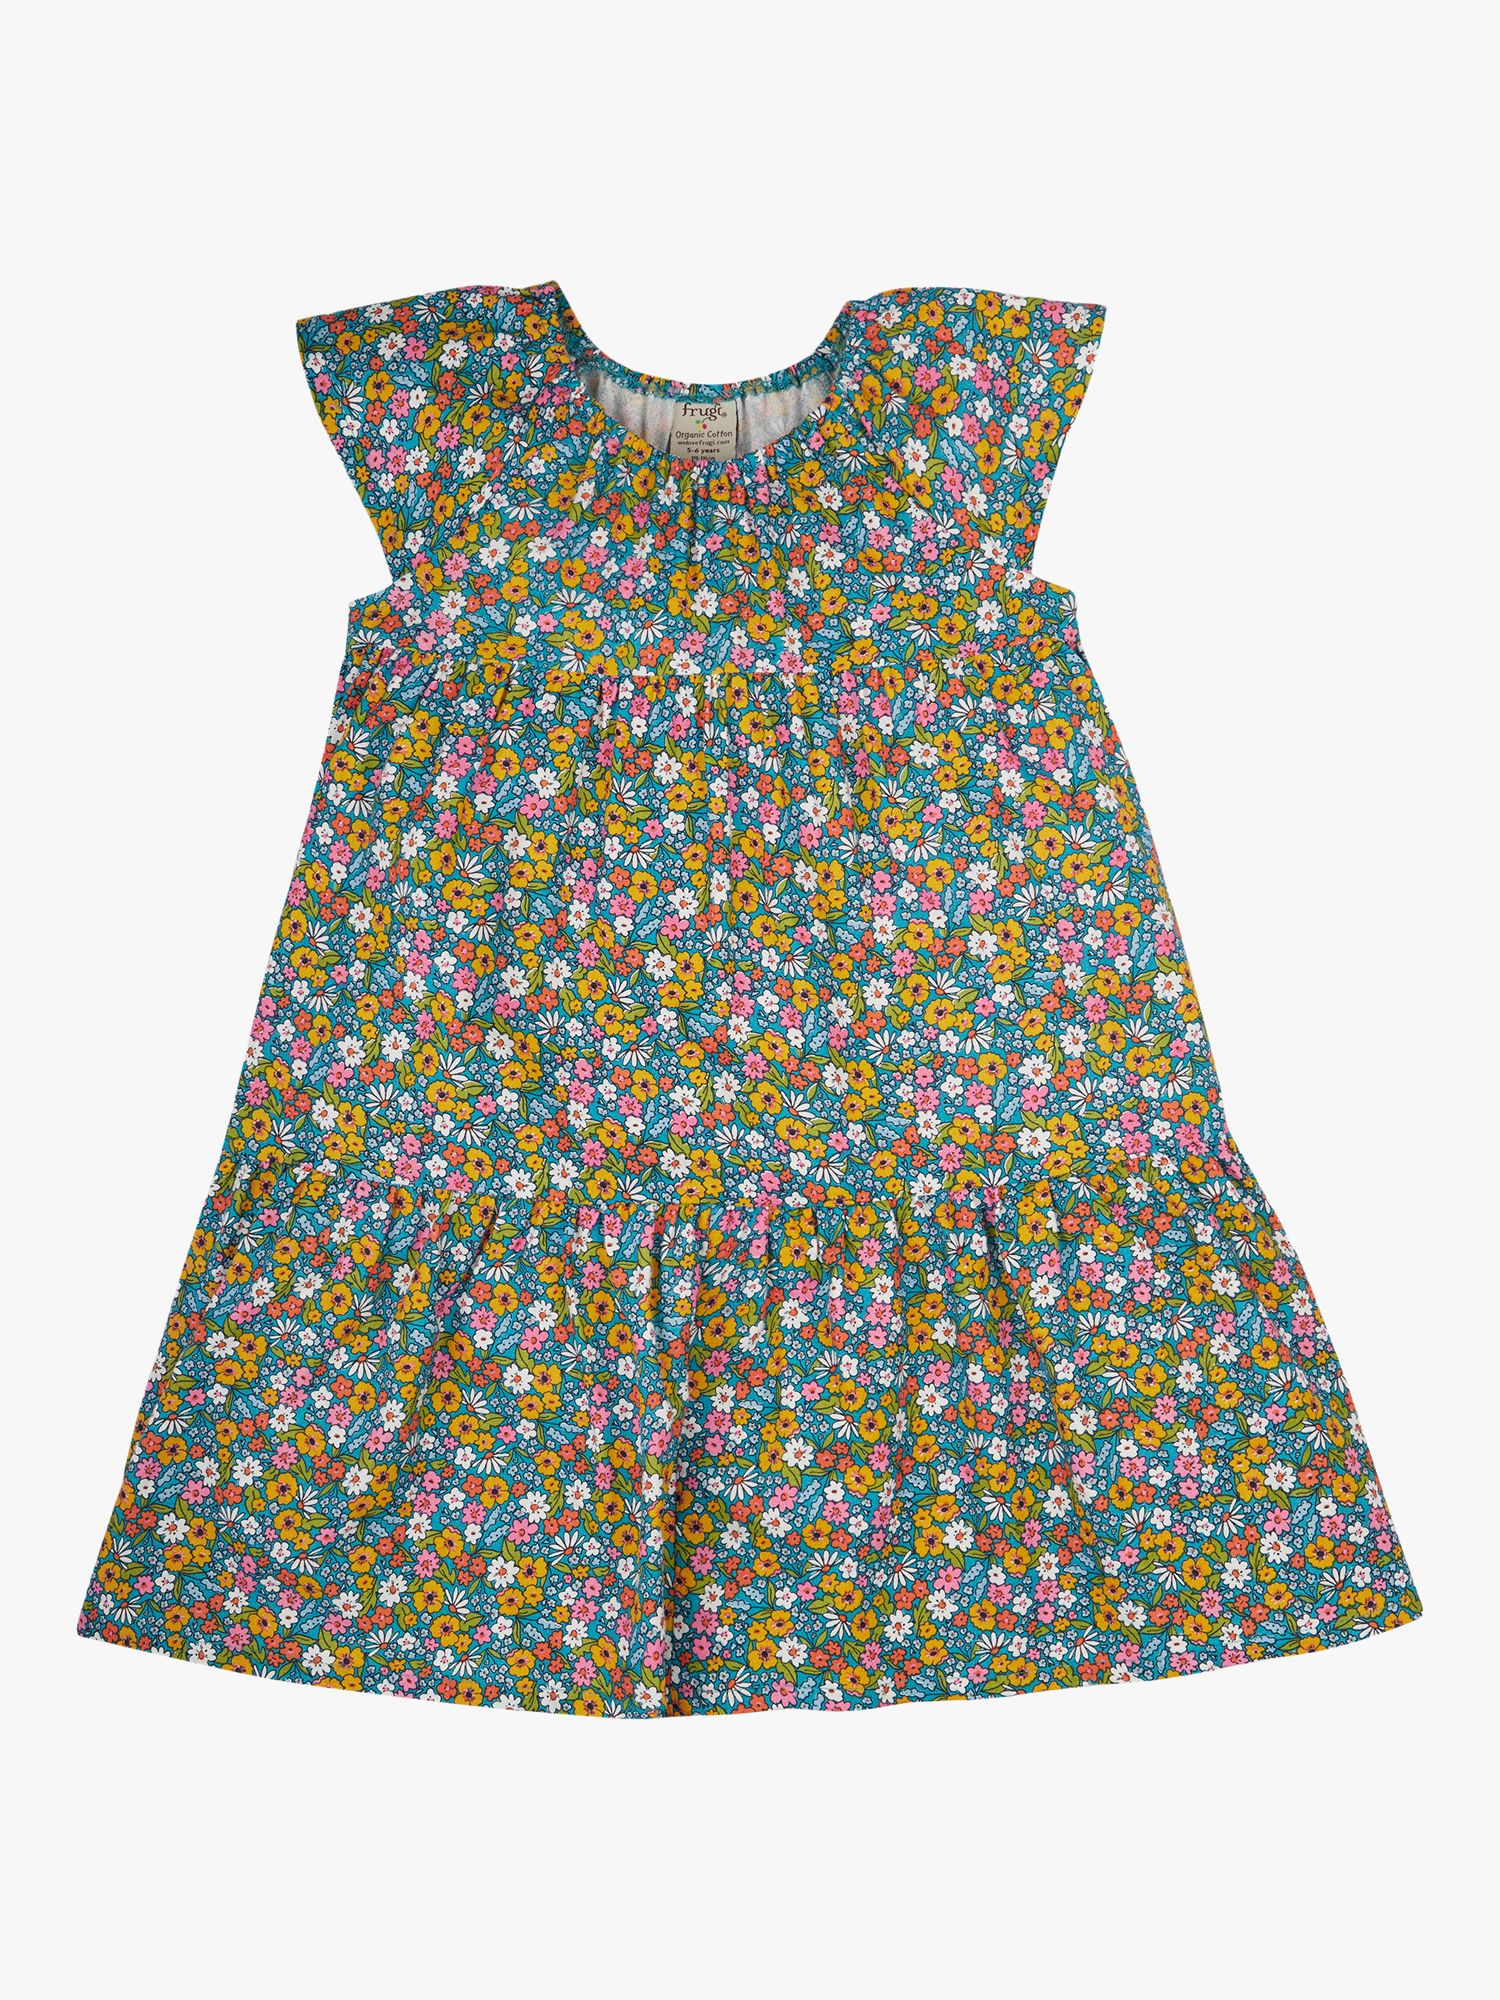 Frugi Kids' Violet Floral Print Dress, Multi at John Lewis & Partners